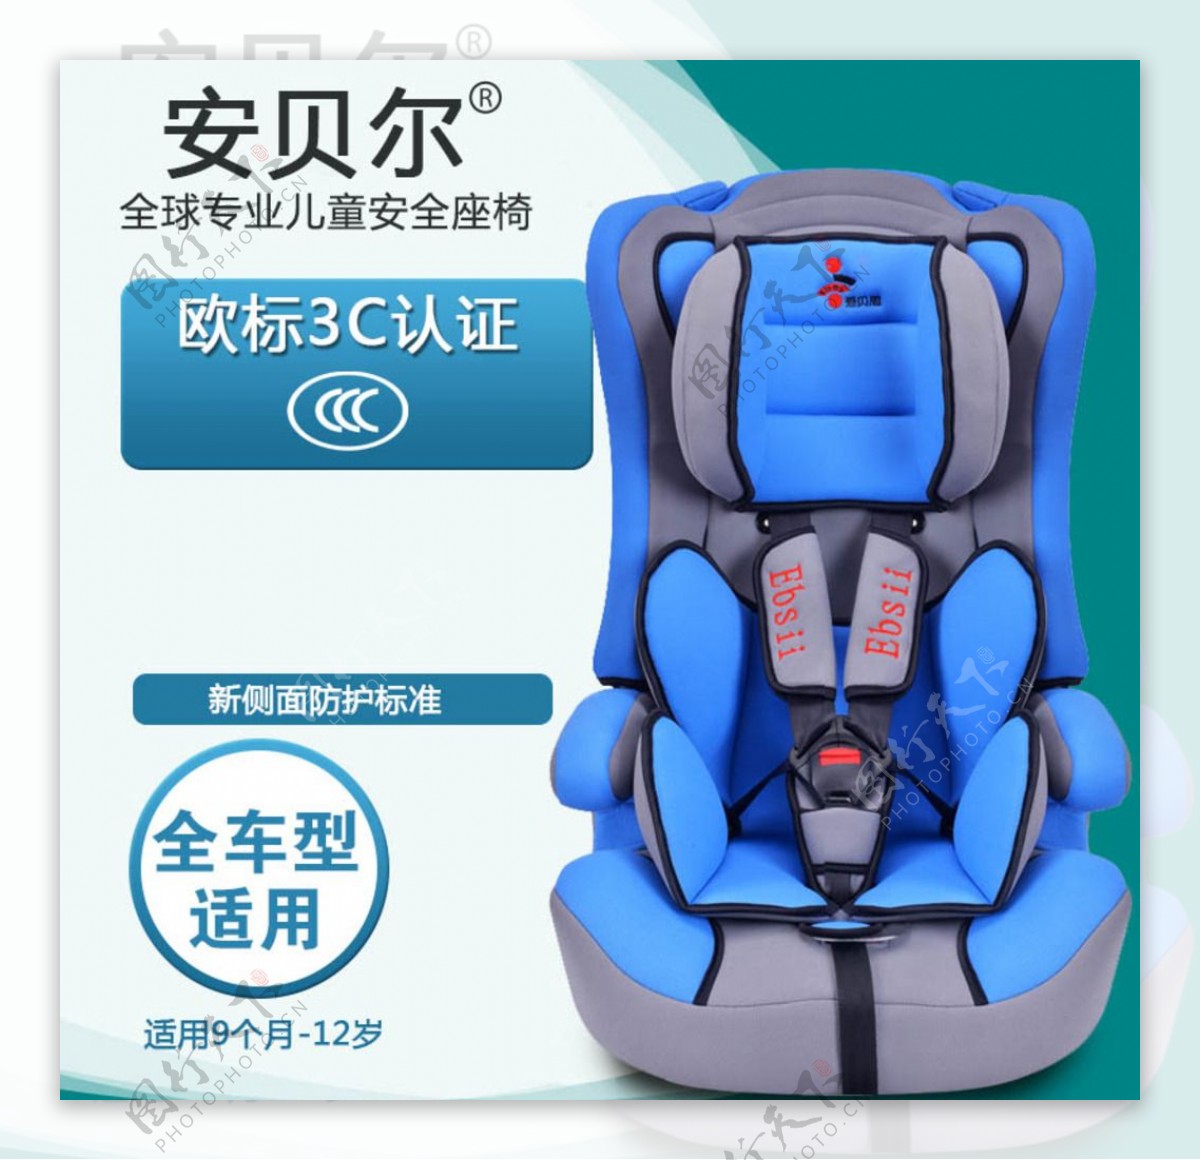 淘宝婴儿汽车安全座椅主图素材